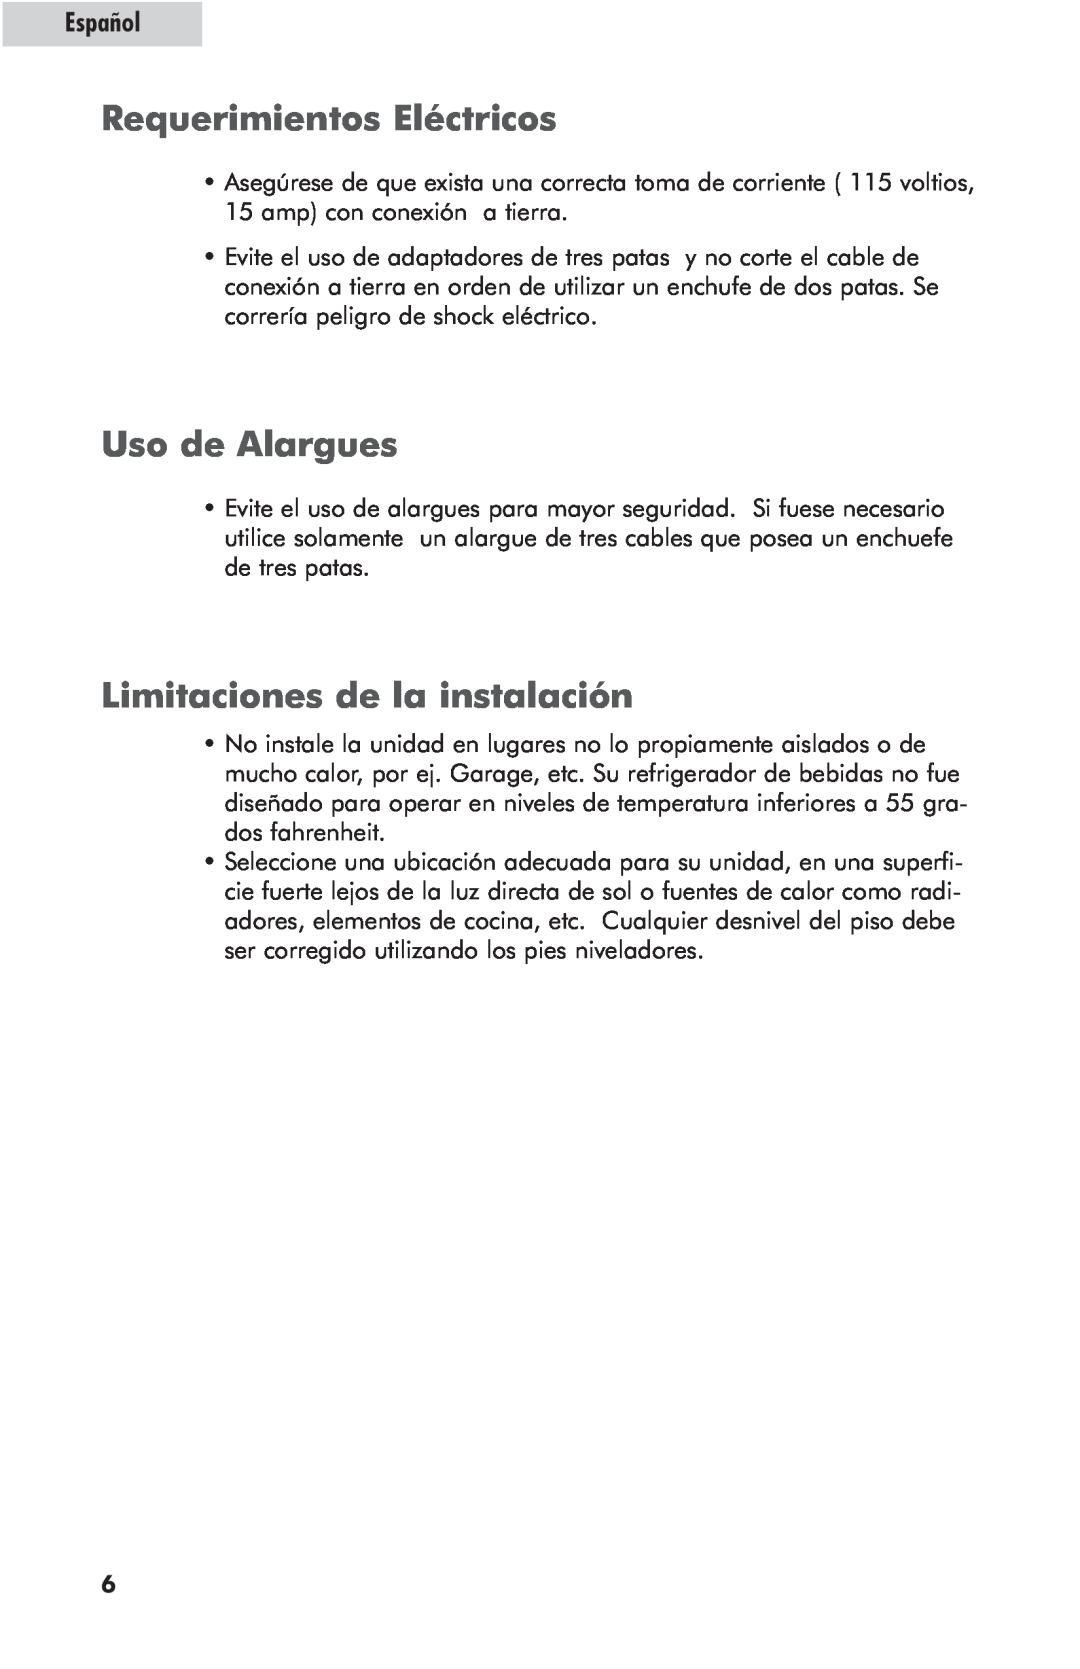 Haier hc125fvs user manual Requerimientos Eléctricos, Uso de Alargues, Limitaciones de la instalación, Español 